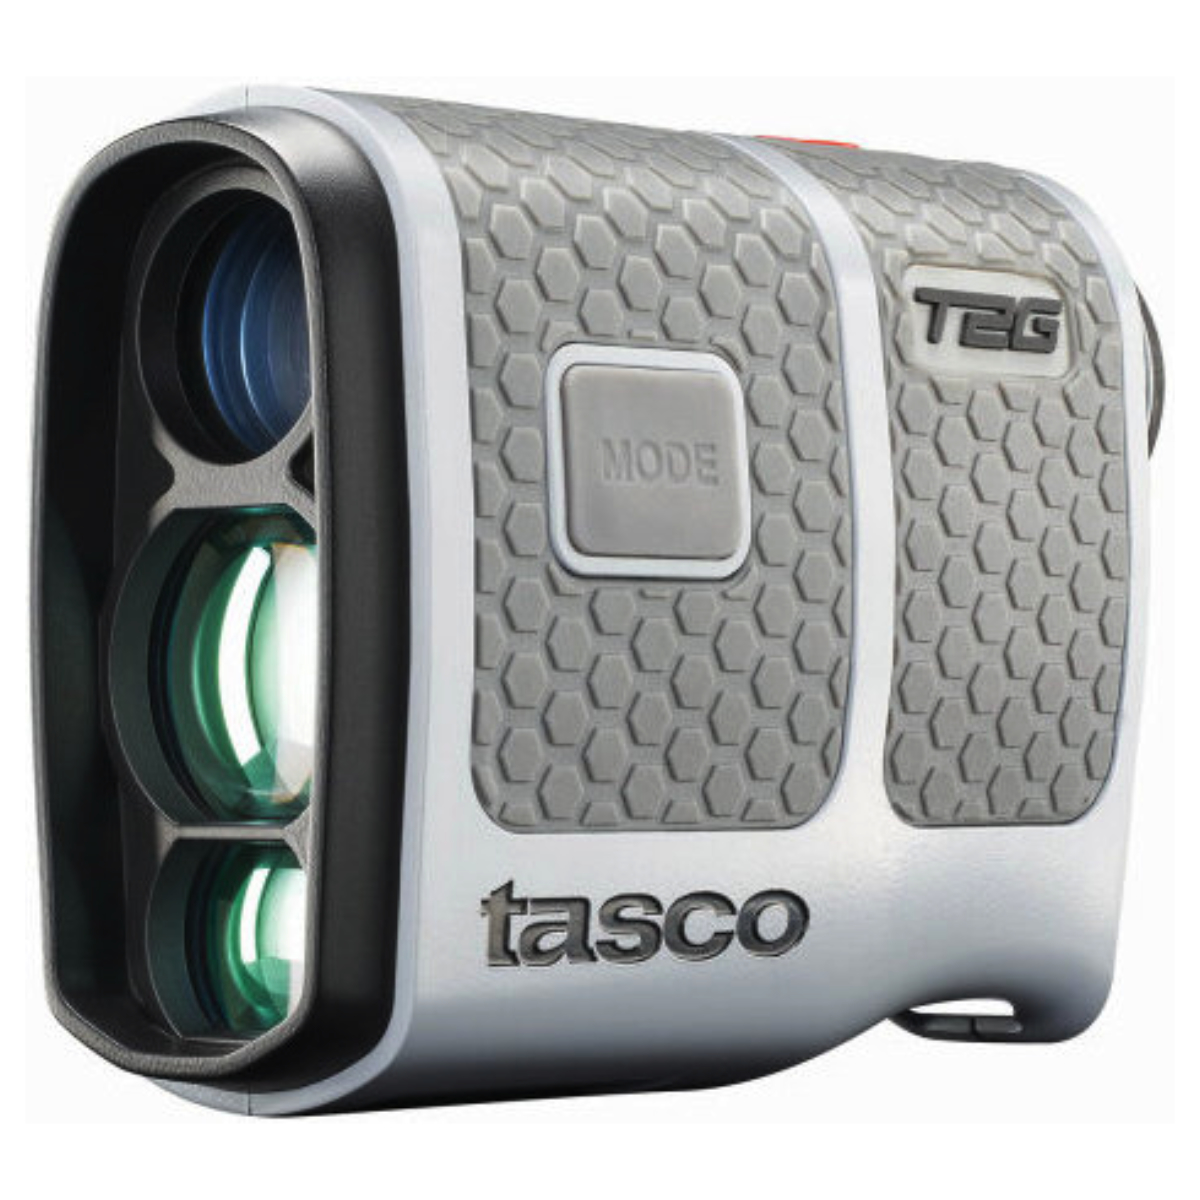 Tasco Laser T2G Tour Silver/Black